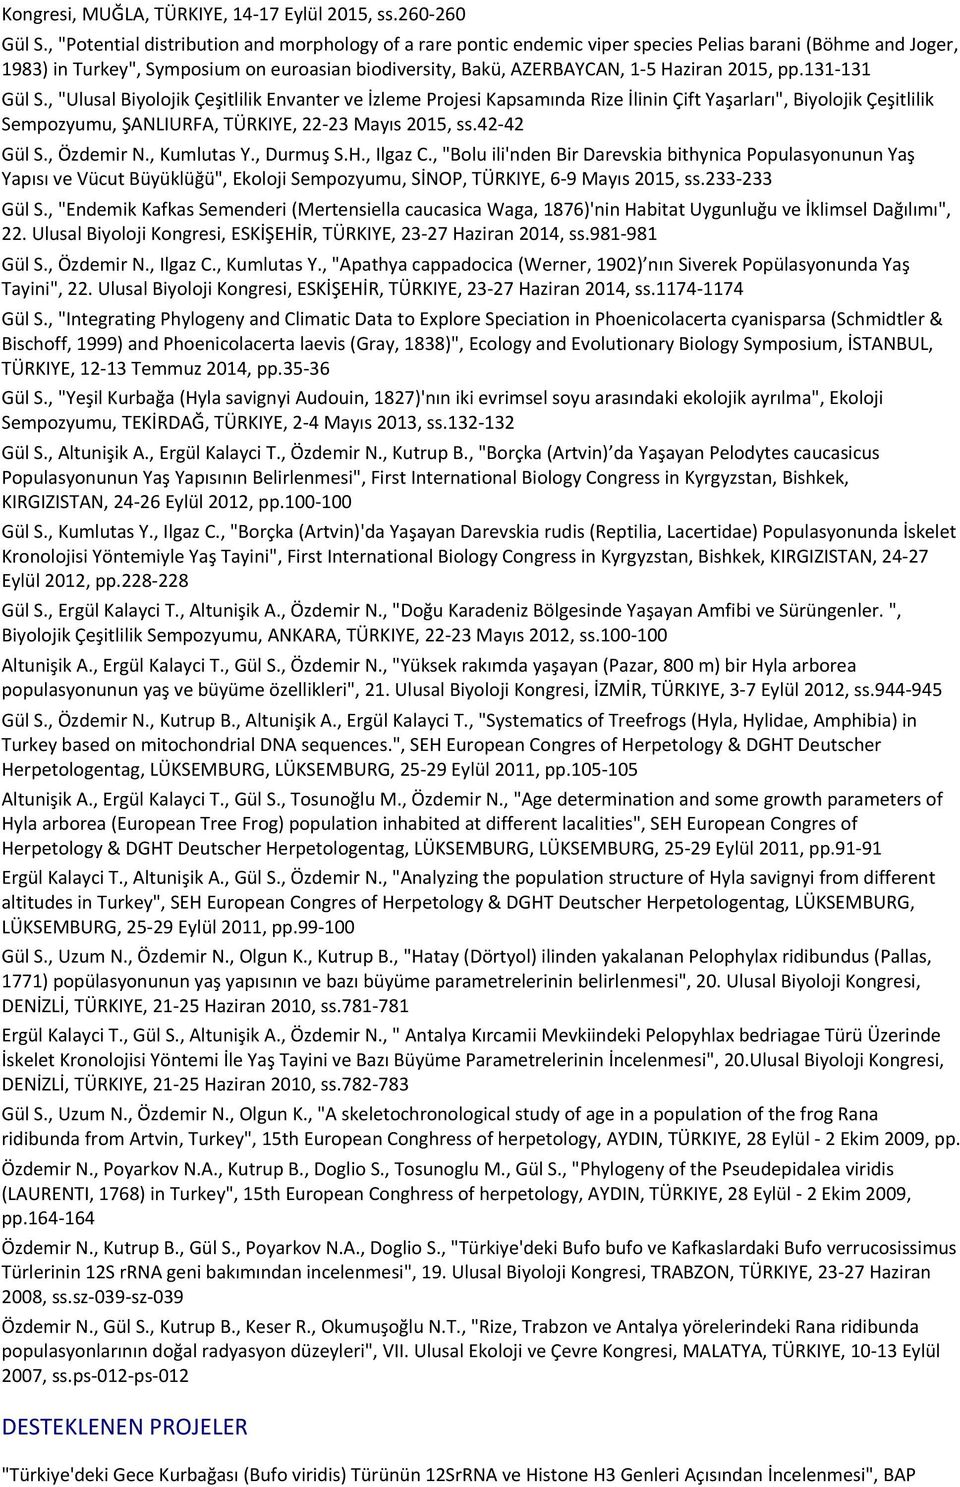 2015, pp.131-131 Gül S., "Ulusal Biyolojik Çeşitlilik Envanter ve İzleme Projesi Kapsamında Rize İlinin Çift Yaşarları", Biyolojik Çeşitlilik Sempozyumu, ŞANLIURFA, TÜRKIYE, 22-23 Mayıs 2015, ss.